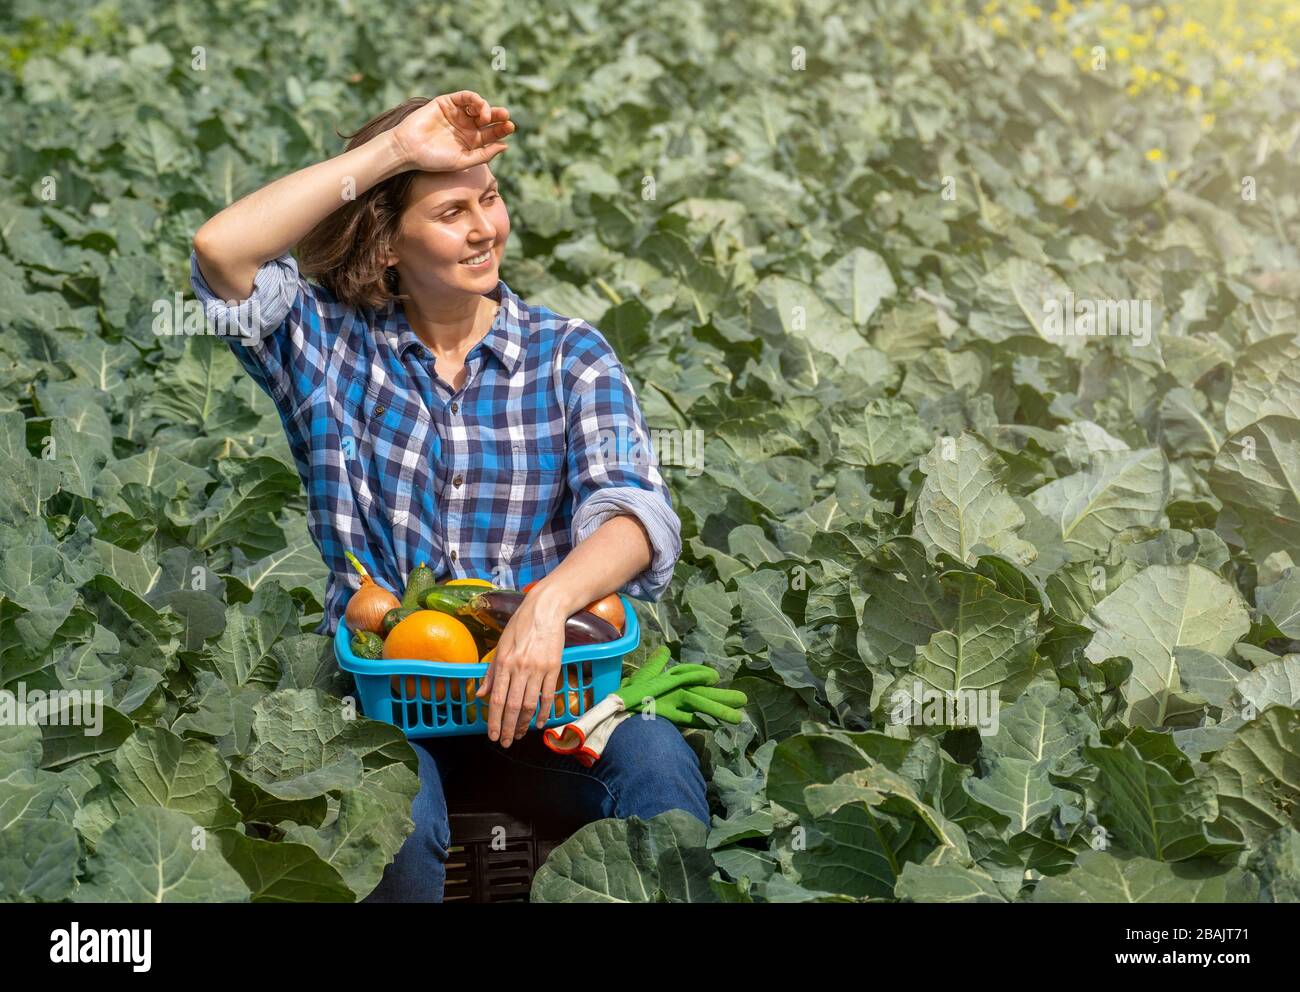 donna che riposa dopo il lavoro in campo e tiene un cesto con verdure raccolte. donna che lavora su un campo agricolo in una giornata di sole Foto Stock